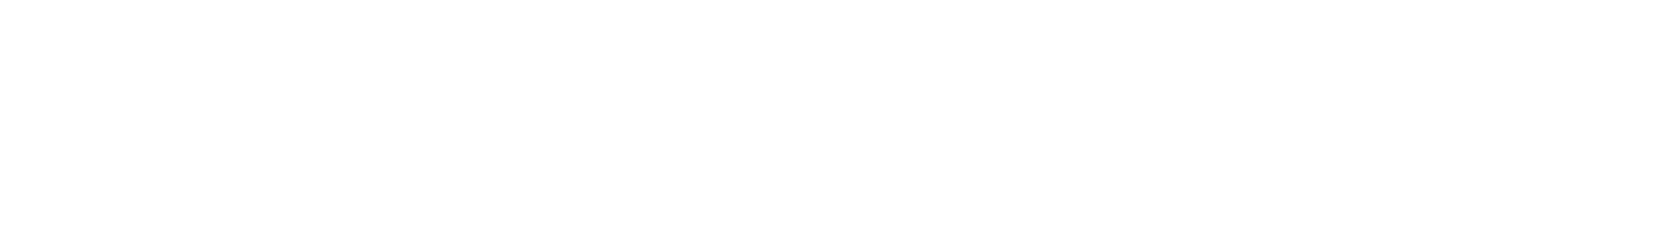 Логотип и шрифты для дизайна сенсорной панели